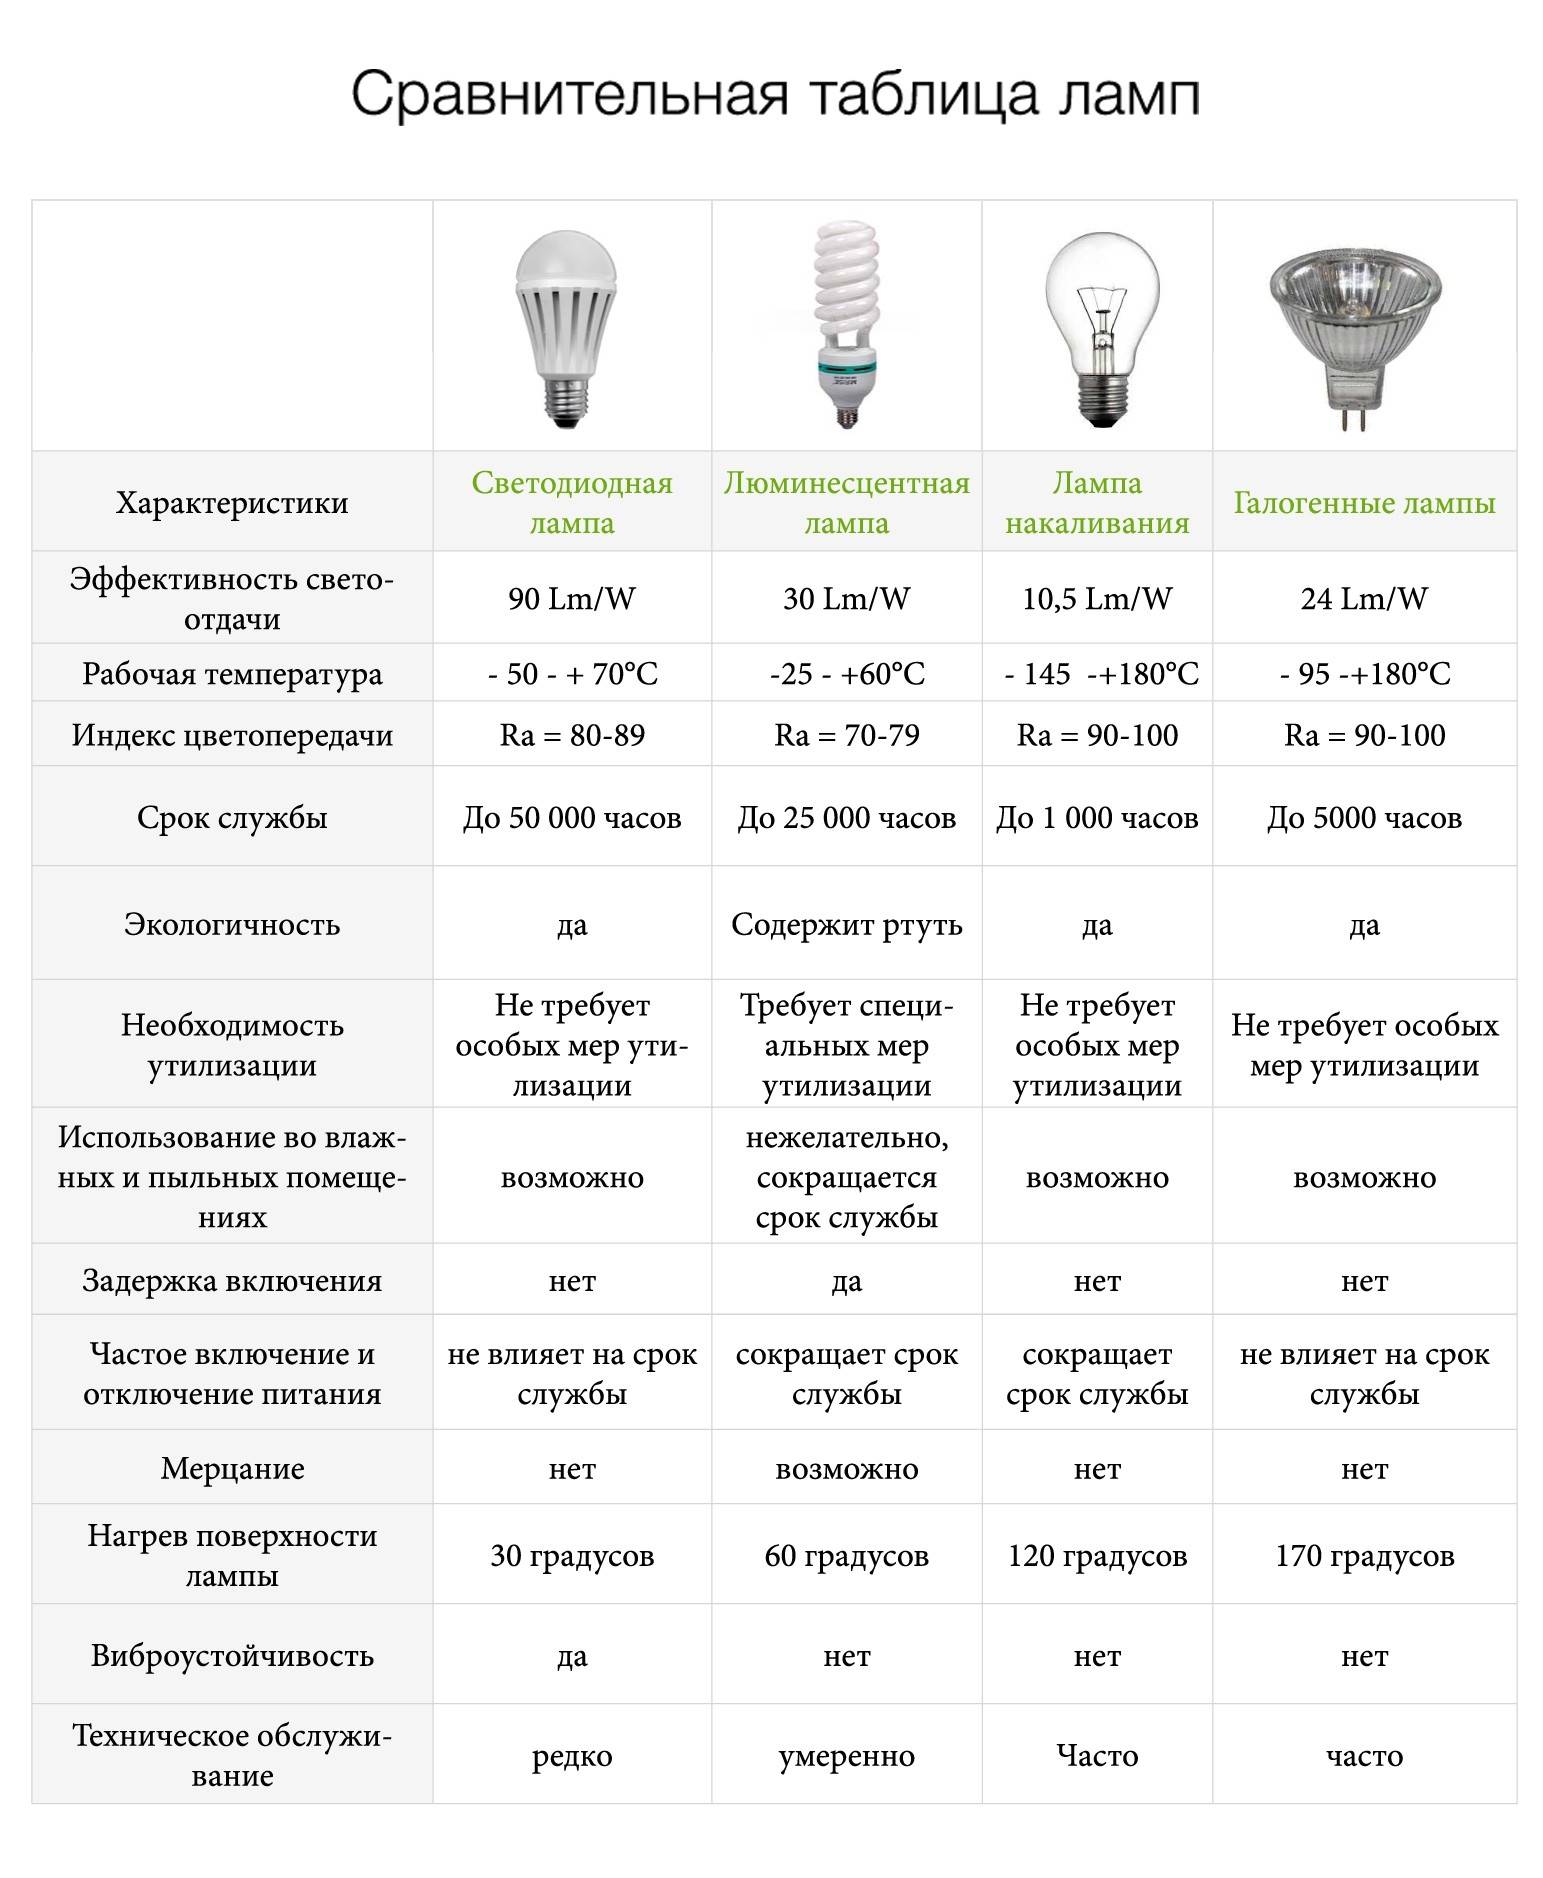 Характеристики светодиодных ламп: где используются, применениедля дома, виды, диапазон рабочих температур, описание, какие применяются